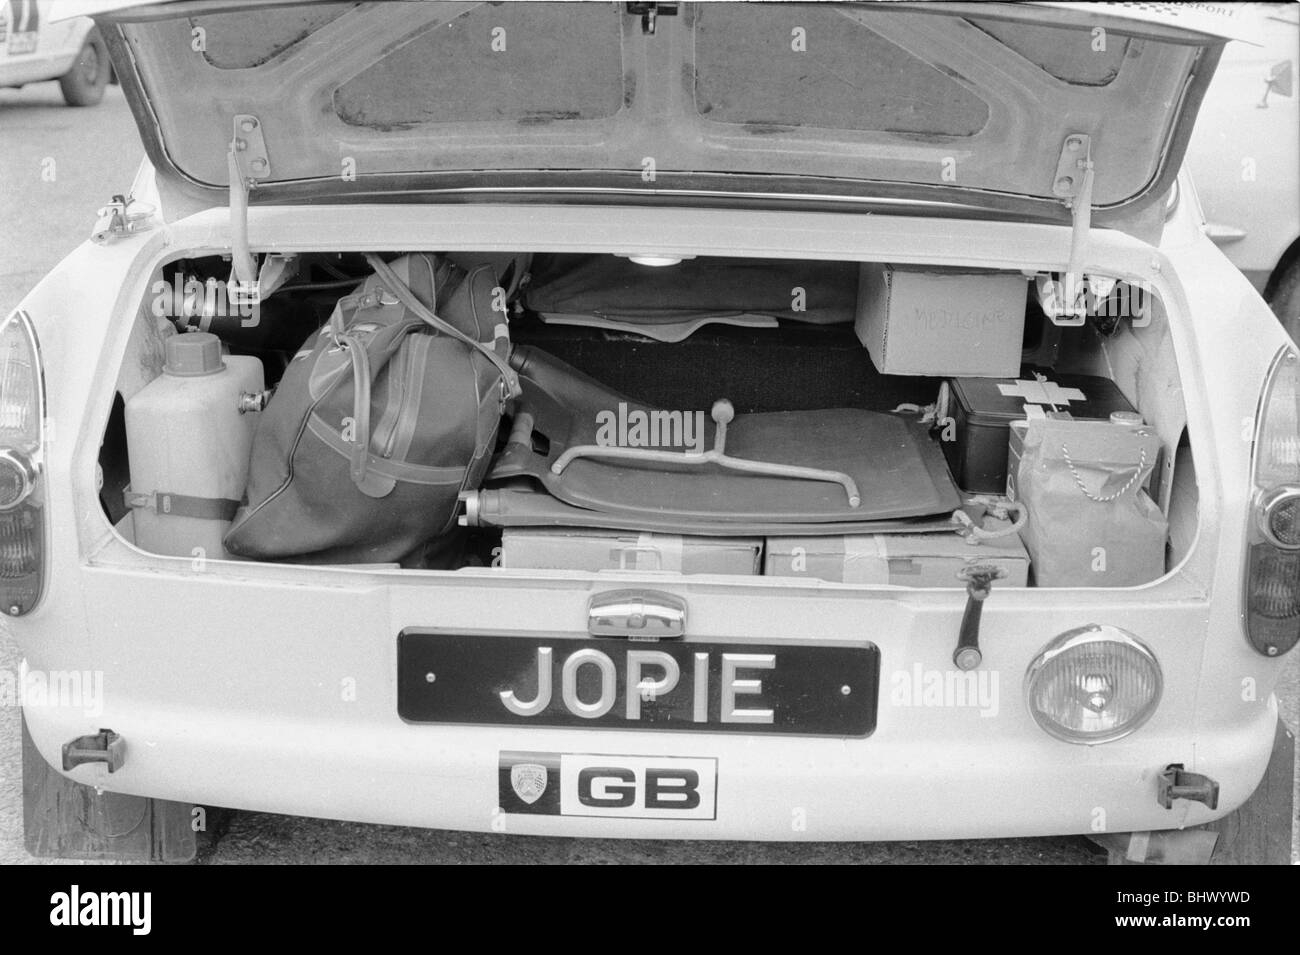 Coffre de Peter Jopp B.L.M.C. 1800 prêt pour l'inspection finale des contrôles au début de la Coupe du monde des miroirs quotidienne Rally, Wembley 19/04/1970 Banque D'Images